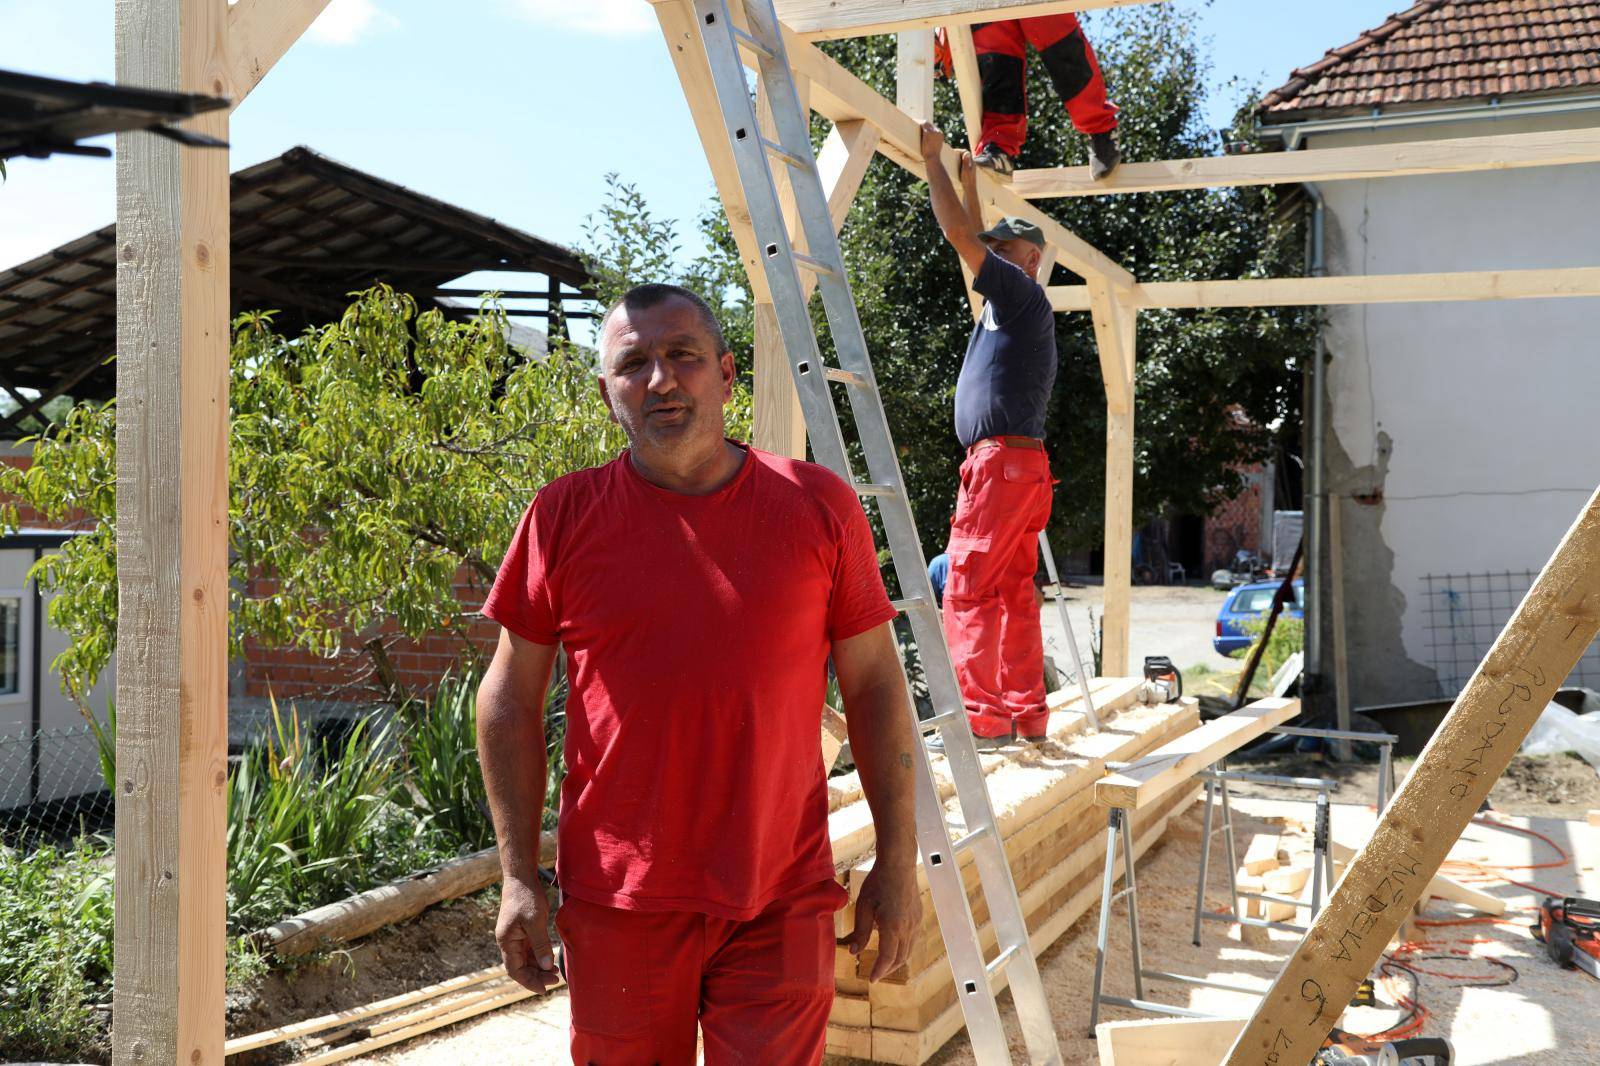 Majstor koji gradi kuće ljudima na Baniji: 'Cijene materijala su poskupile, otišle su u nebo'